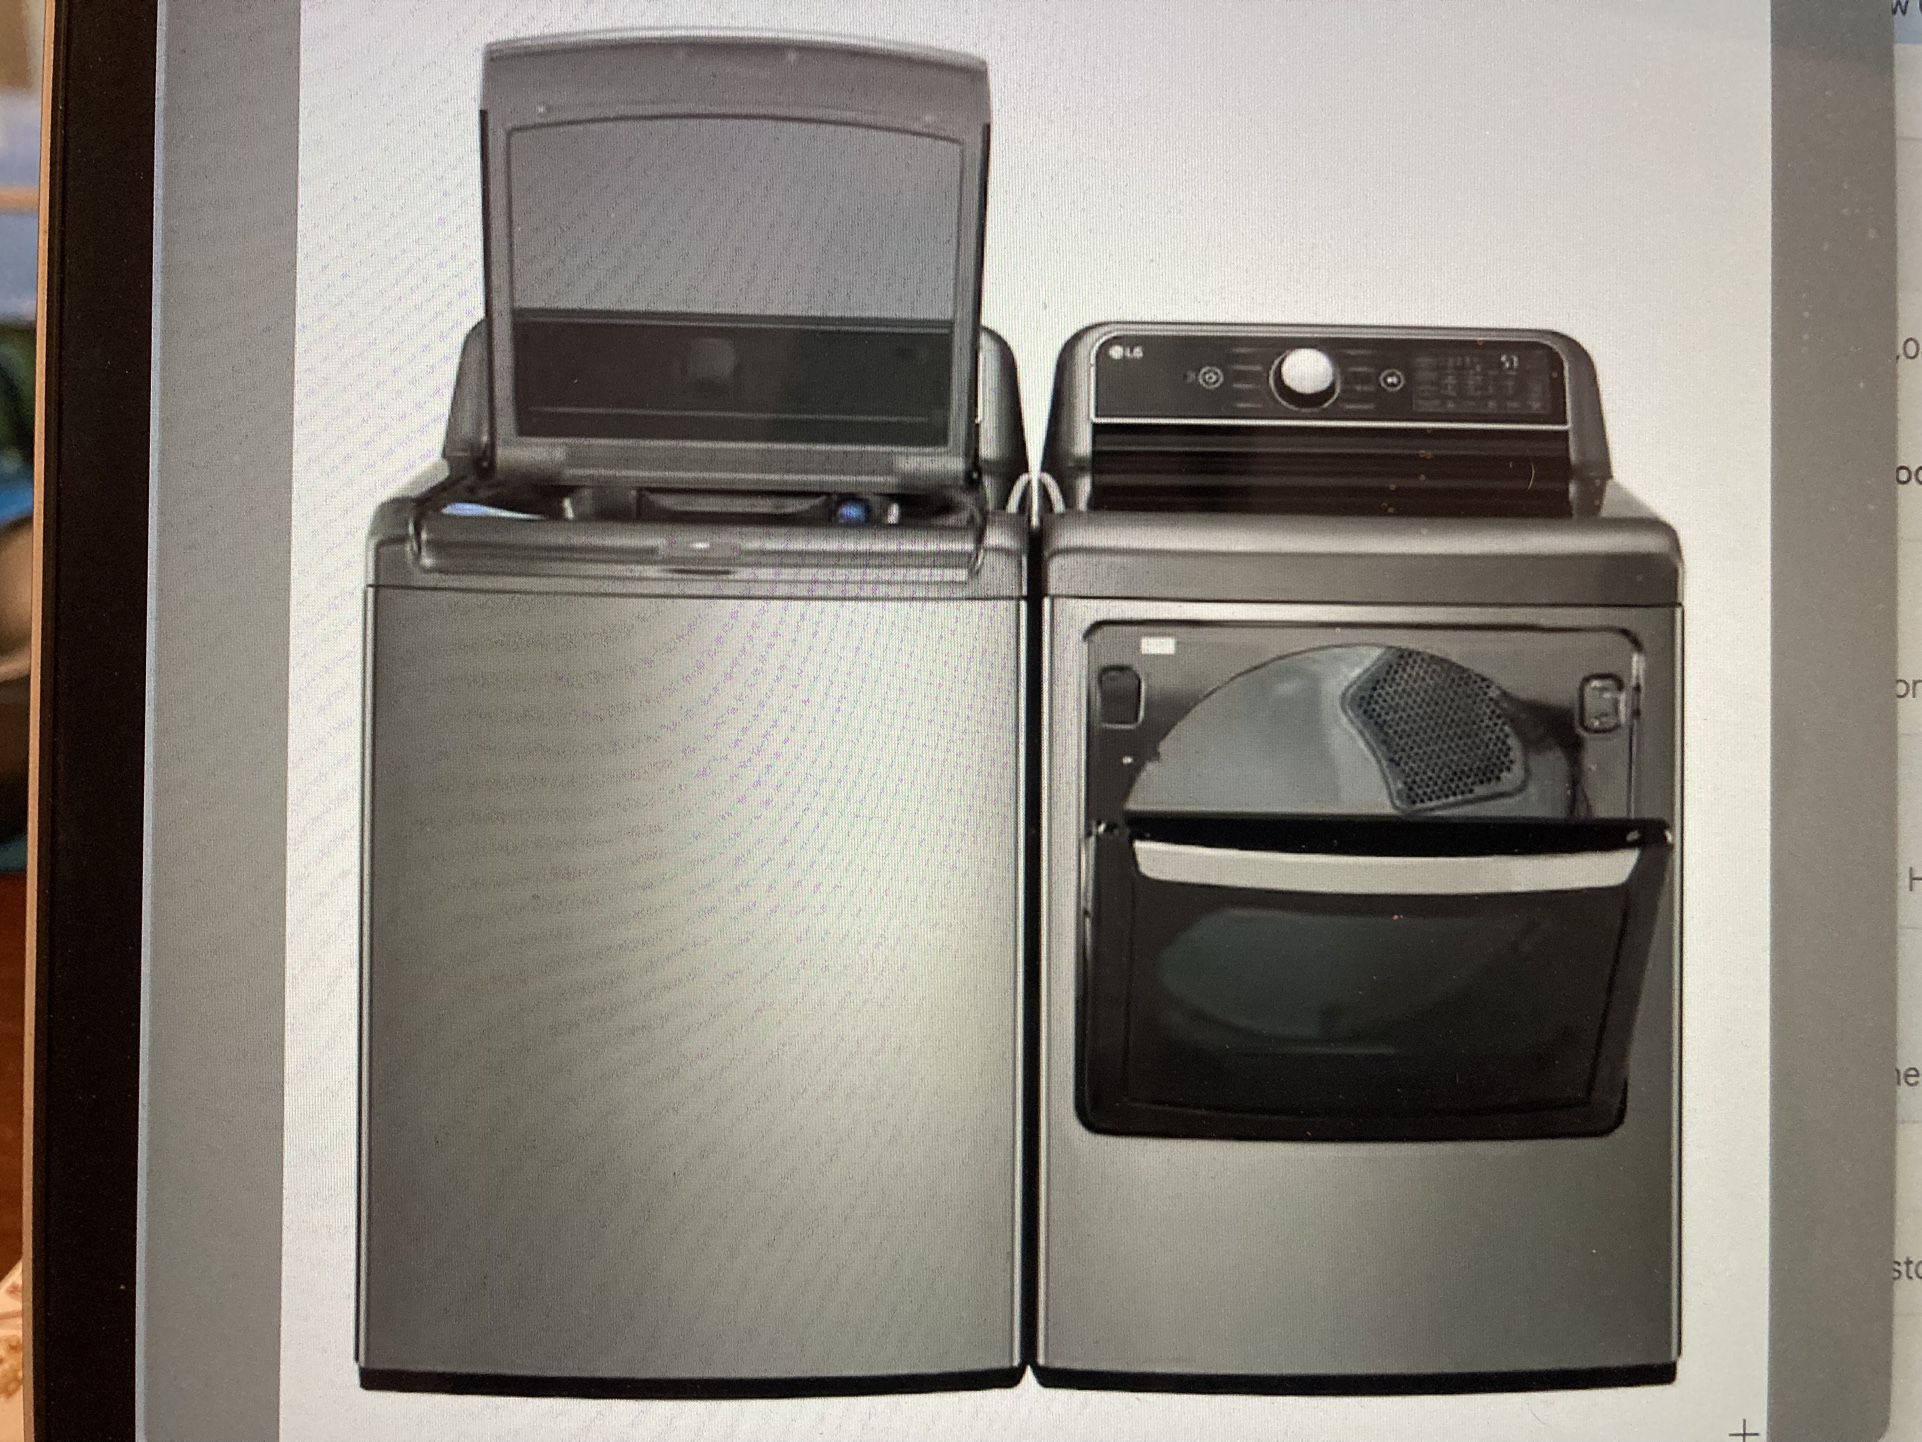 LG Washer/Gas Dryer Large Capacity